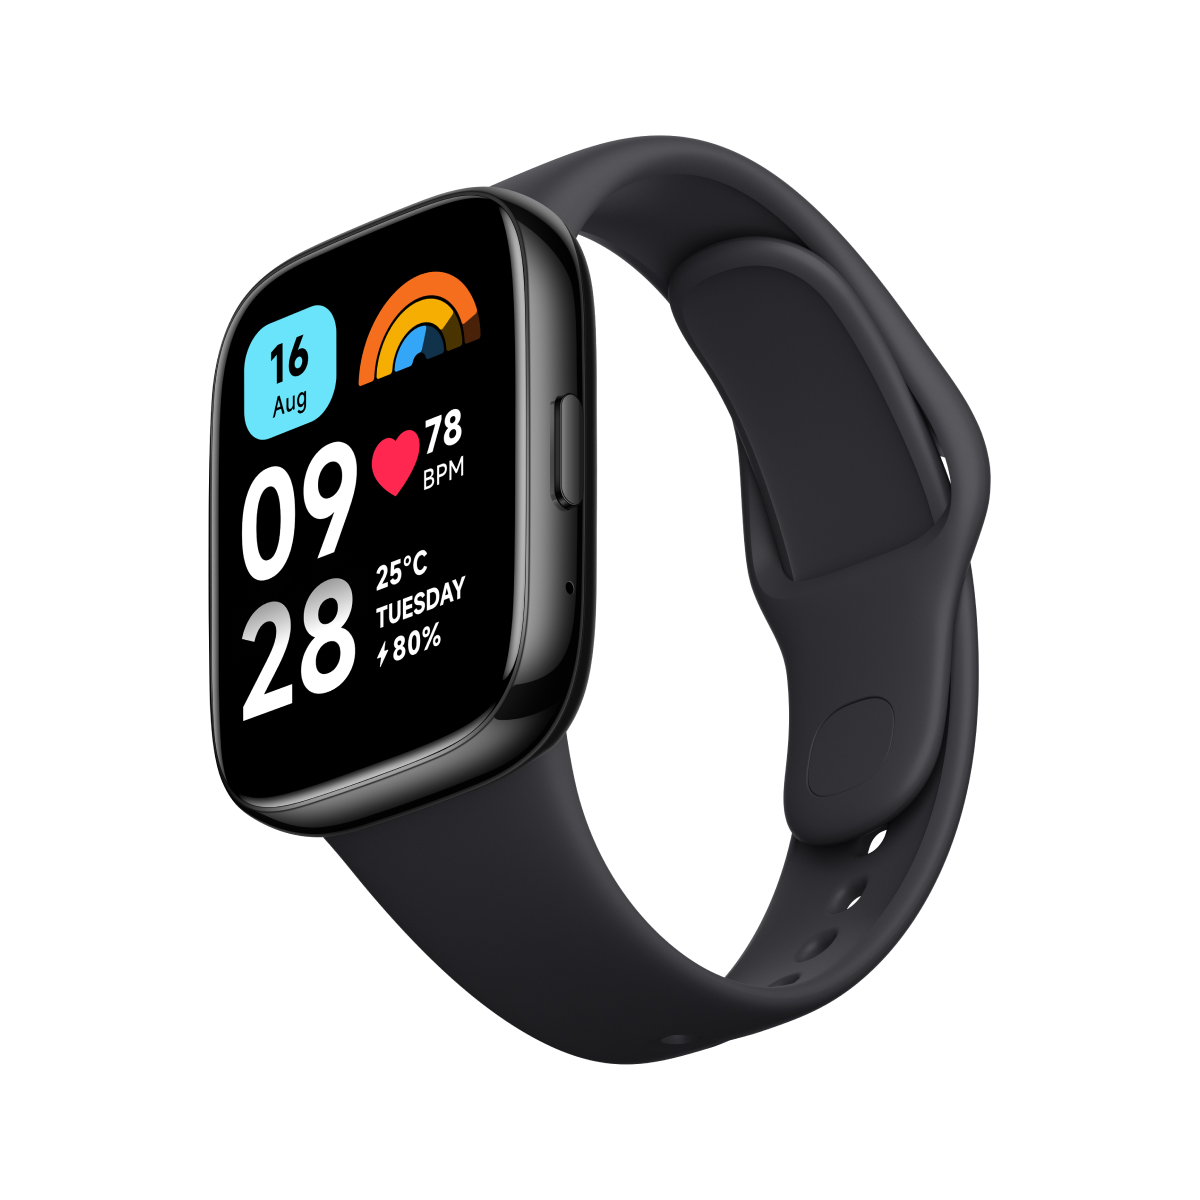 Redmi Watch oficial - características, precio y dónde comprar